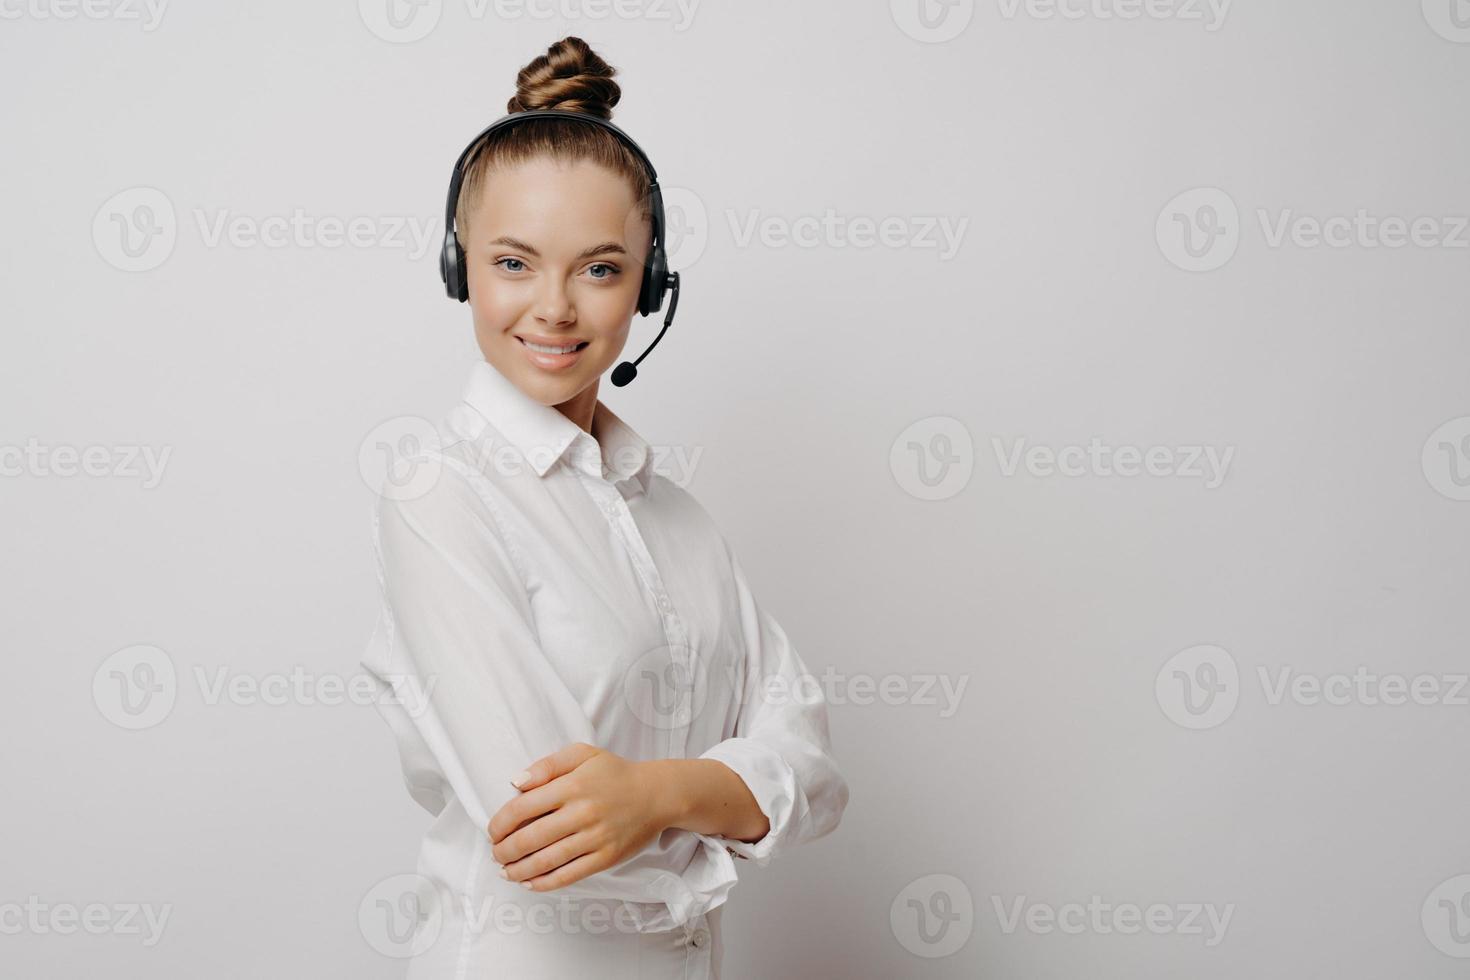 vrouwelijke callcenteragent met zwarte headset en gekruiste armen foto